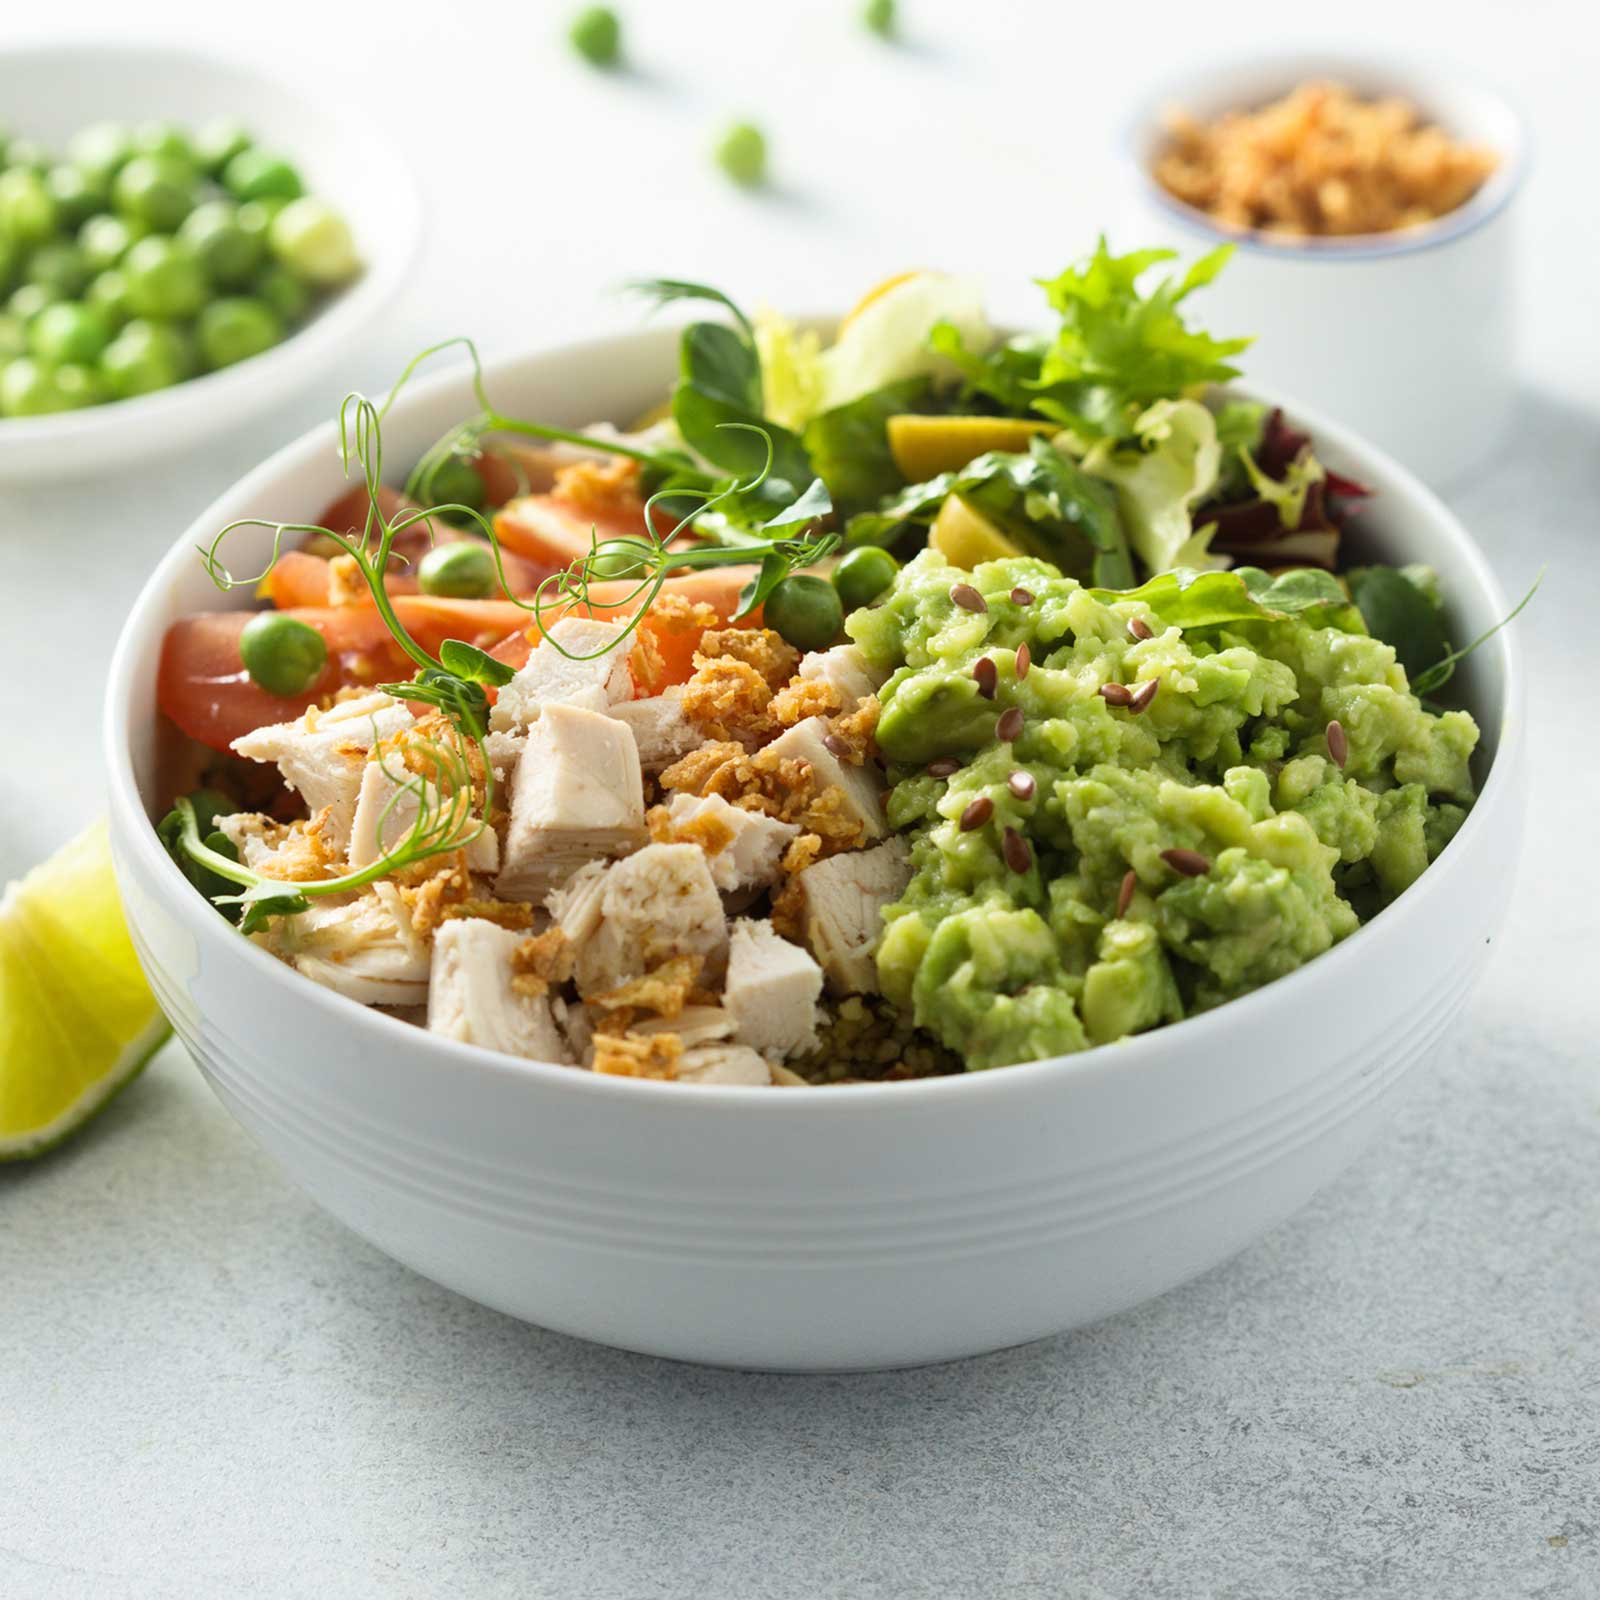 Crea&Gusta la tua piadina con verdure grigliate, per un pranzo healthy!